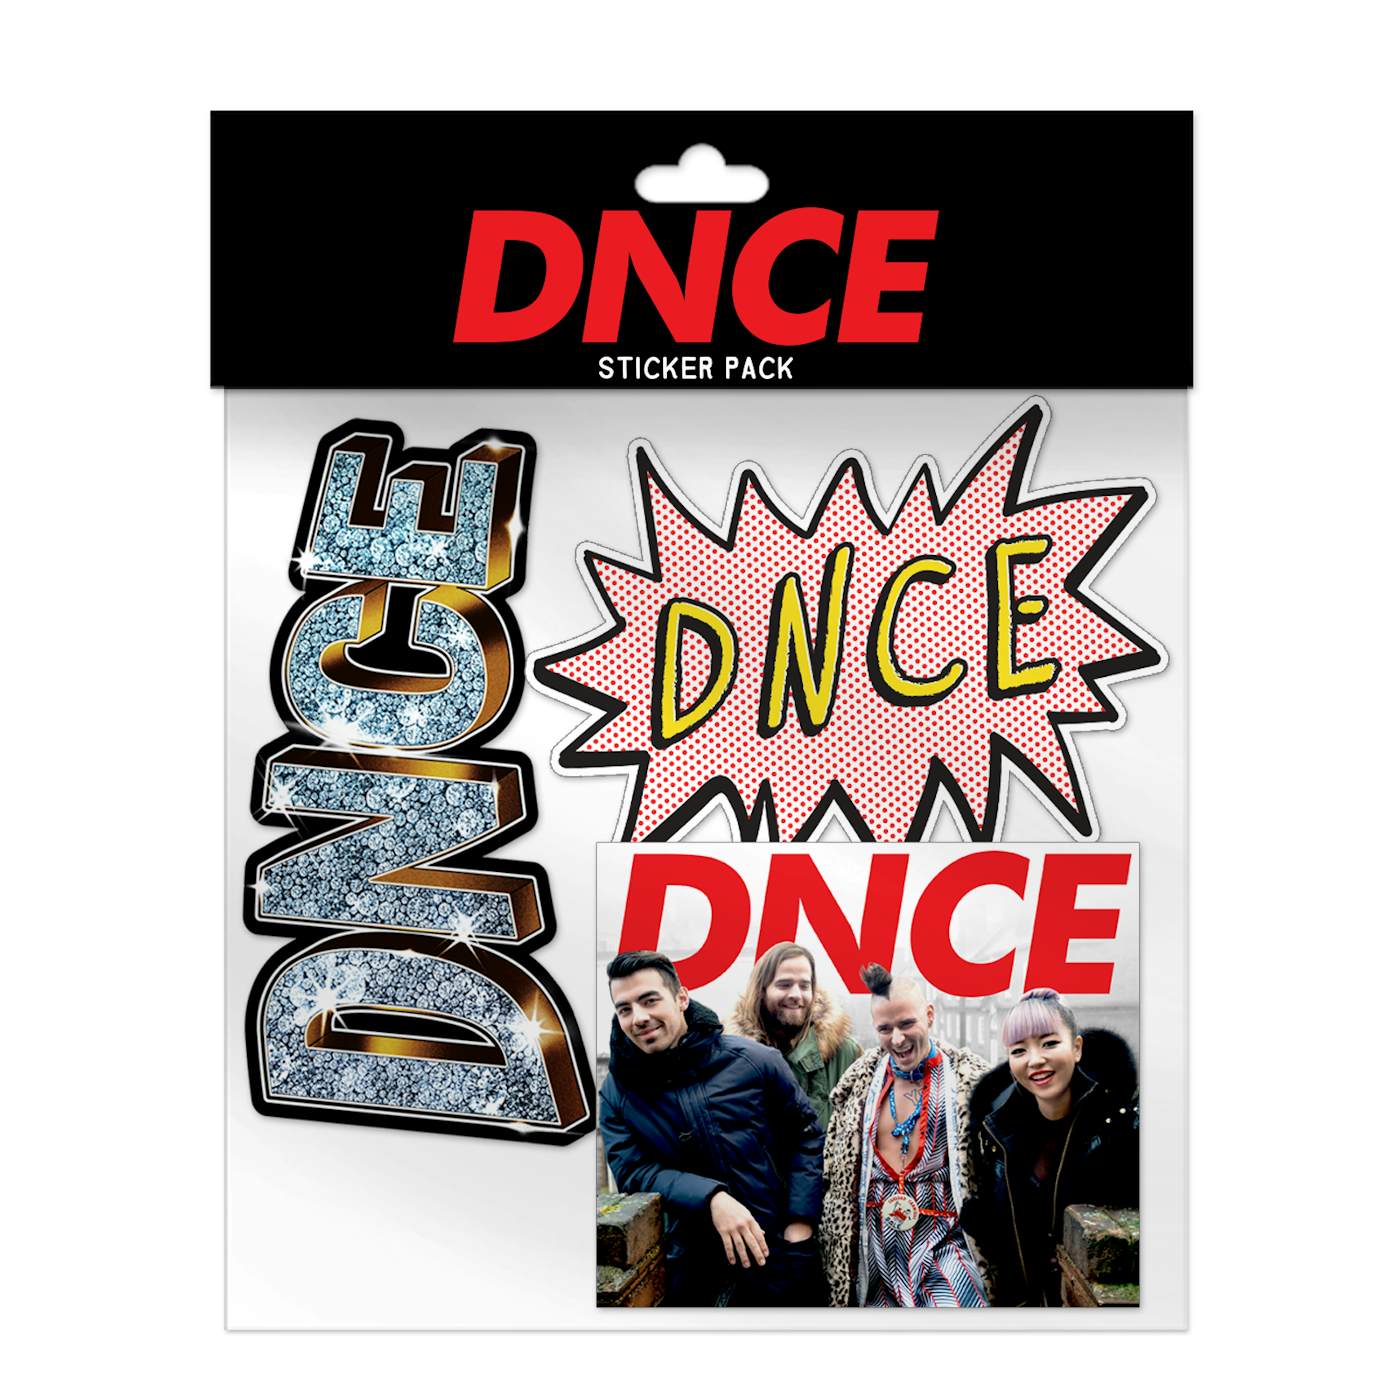 DNCE Sticker Pack